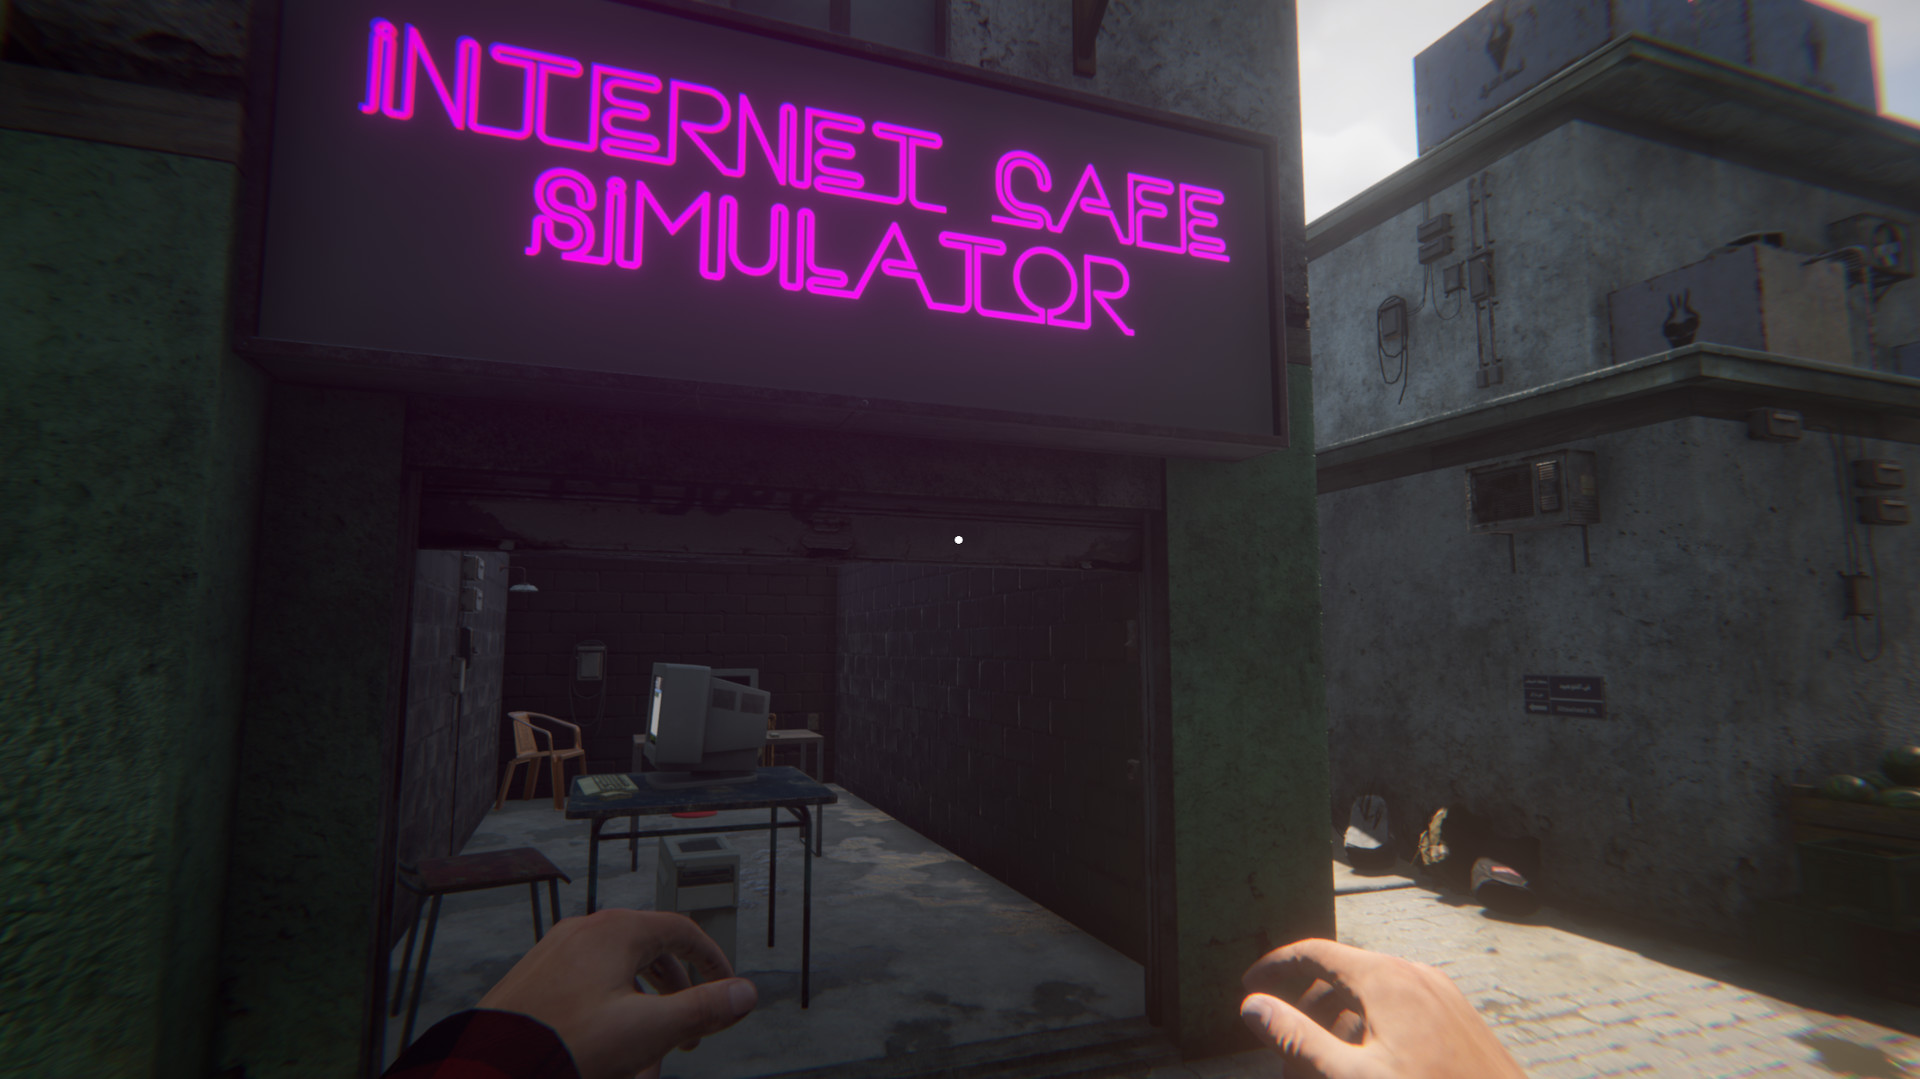 Internet Cafe Simulator 2 EU V2 Steam Altergift